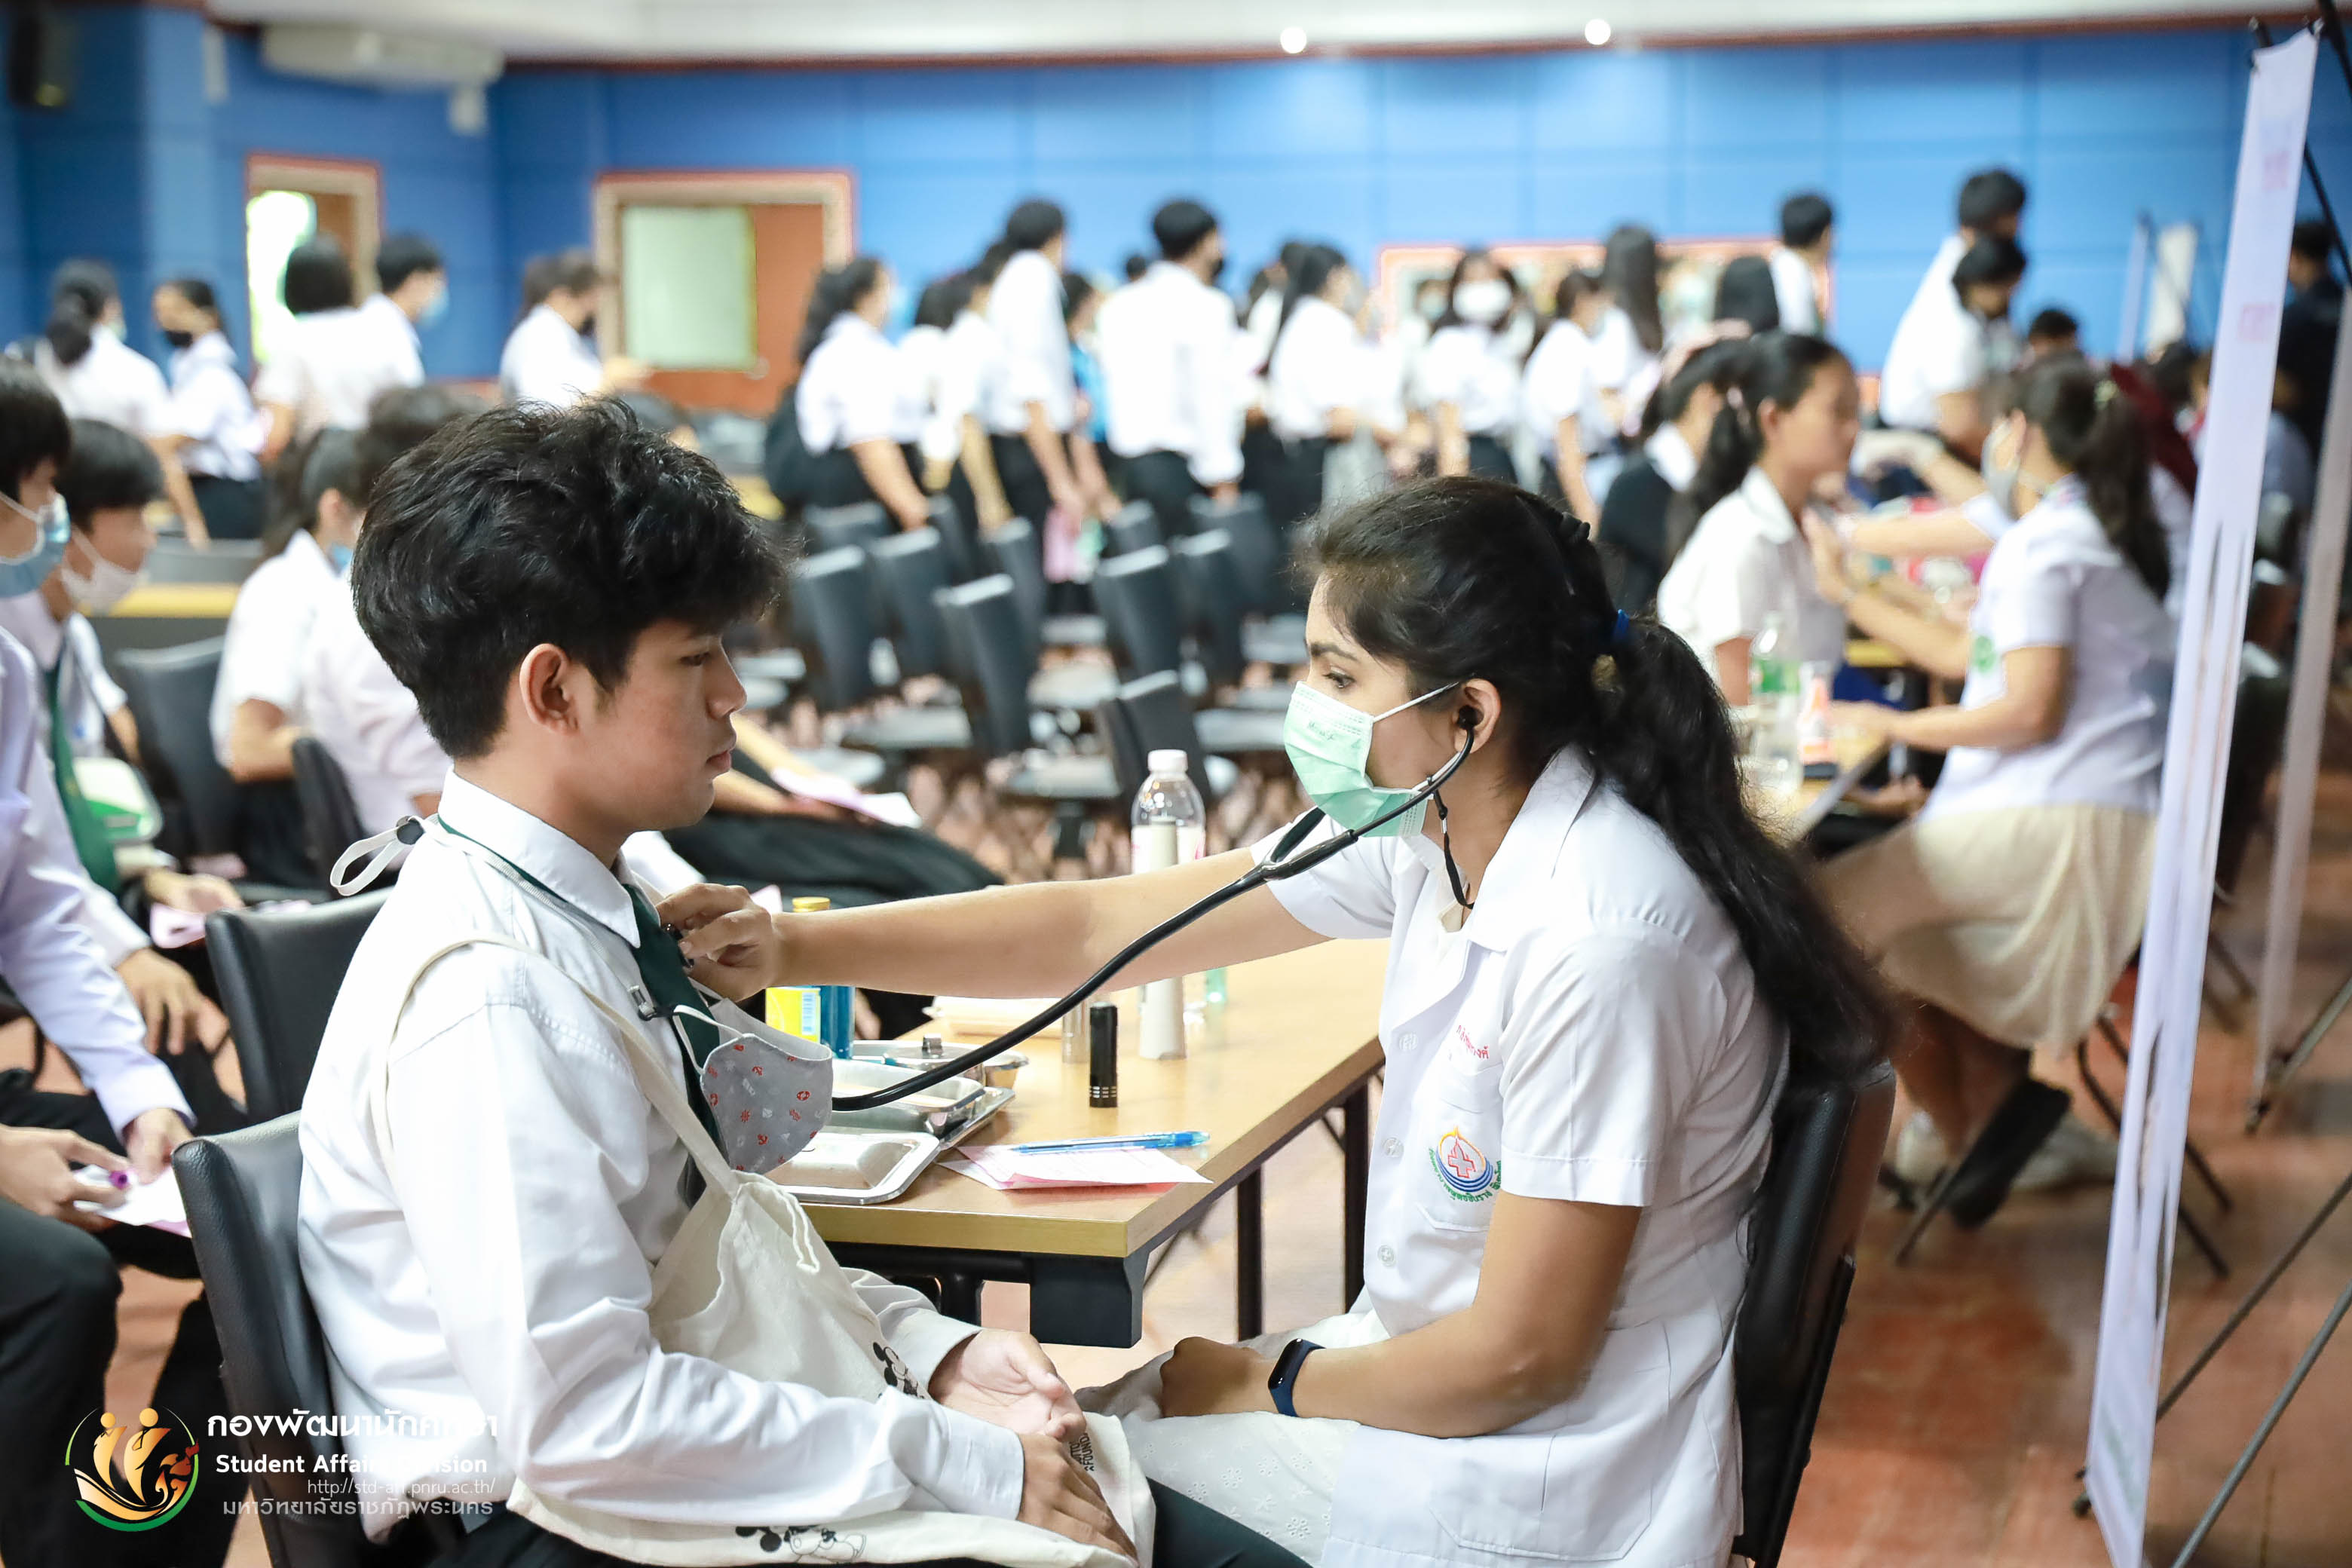 26 กันยายน 2563 กองพัฒนานักศึกษา มหาวิทยาลัยราชภัฏพระนคร จัดให้มีการตรวจสุขภาพนักศึกษาใหม่ภาคปกติ ประจำปีการศึกษา 2563